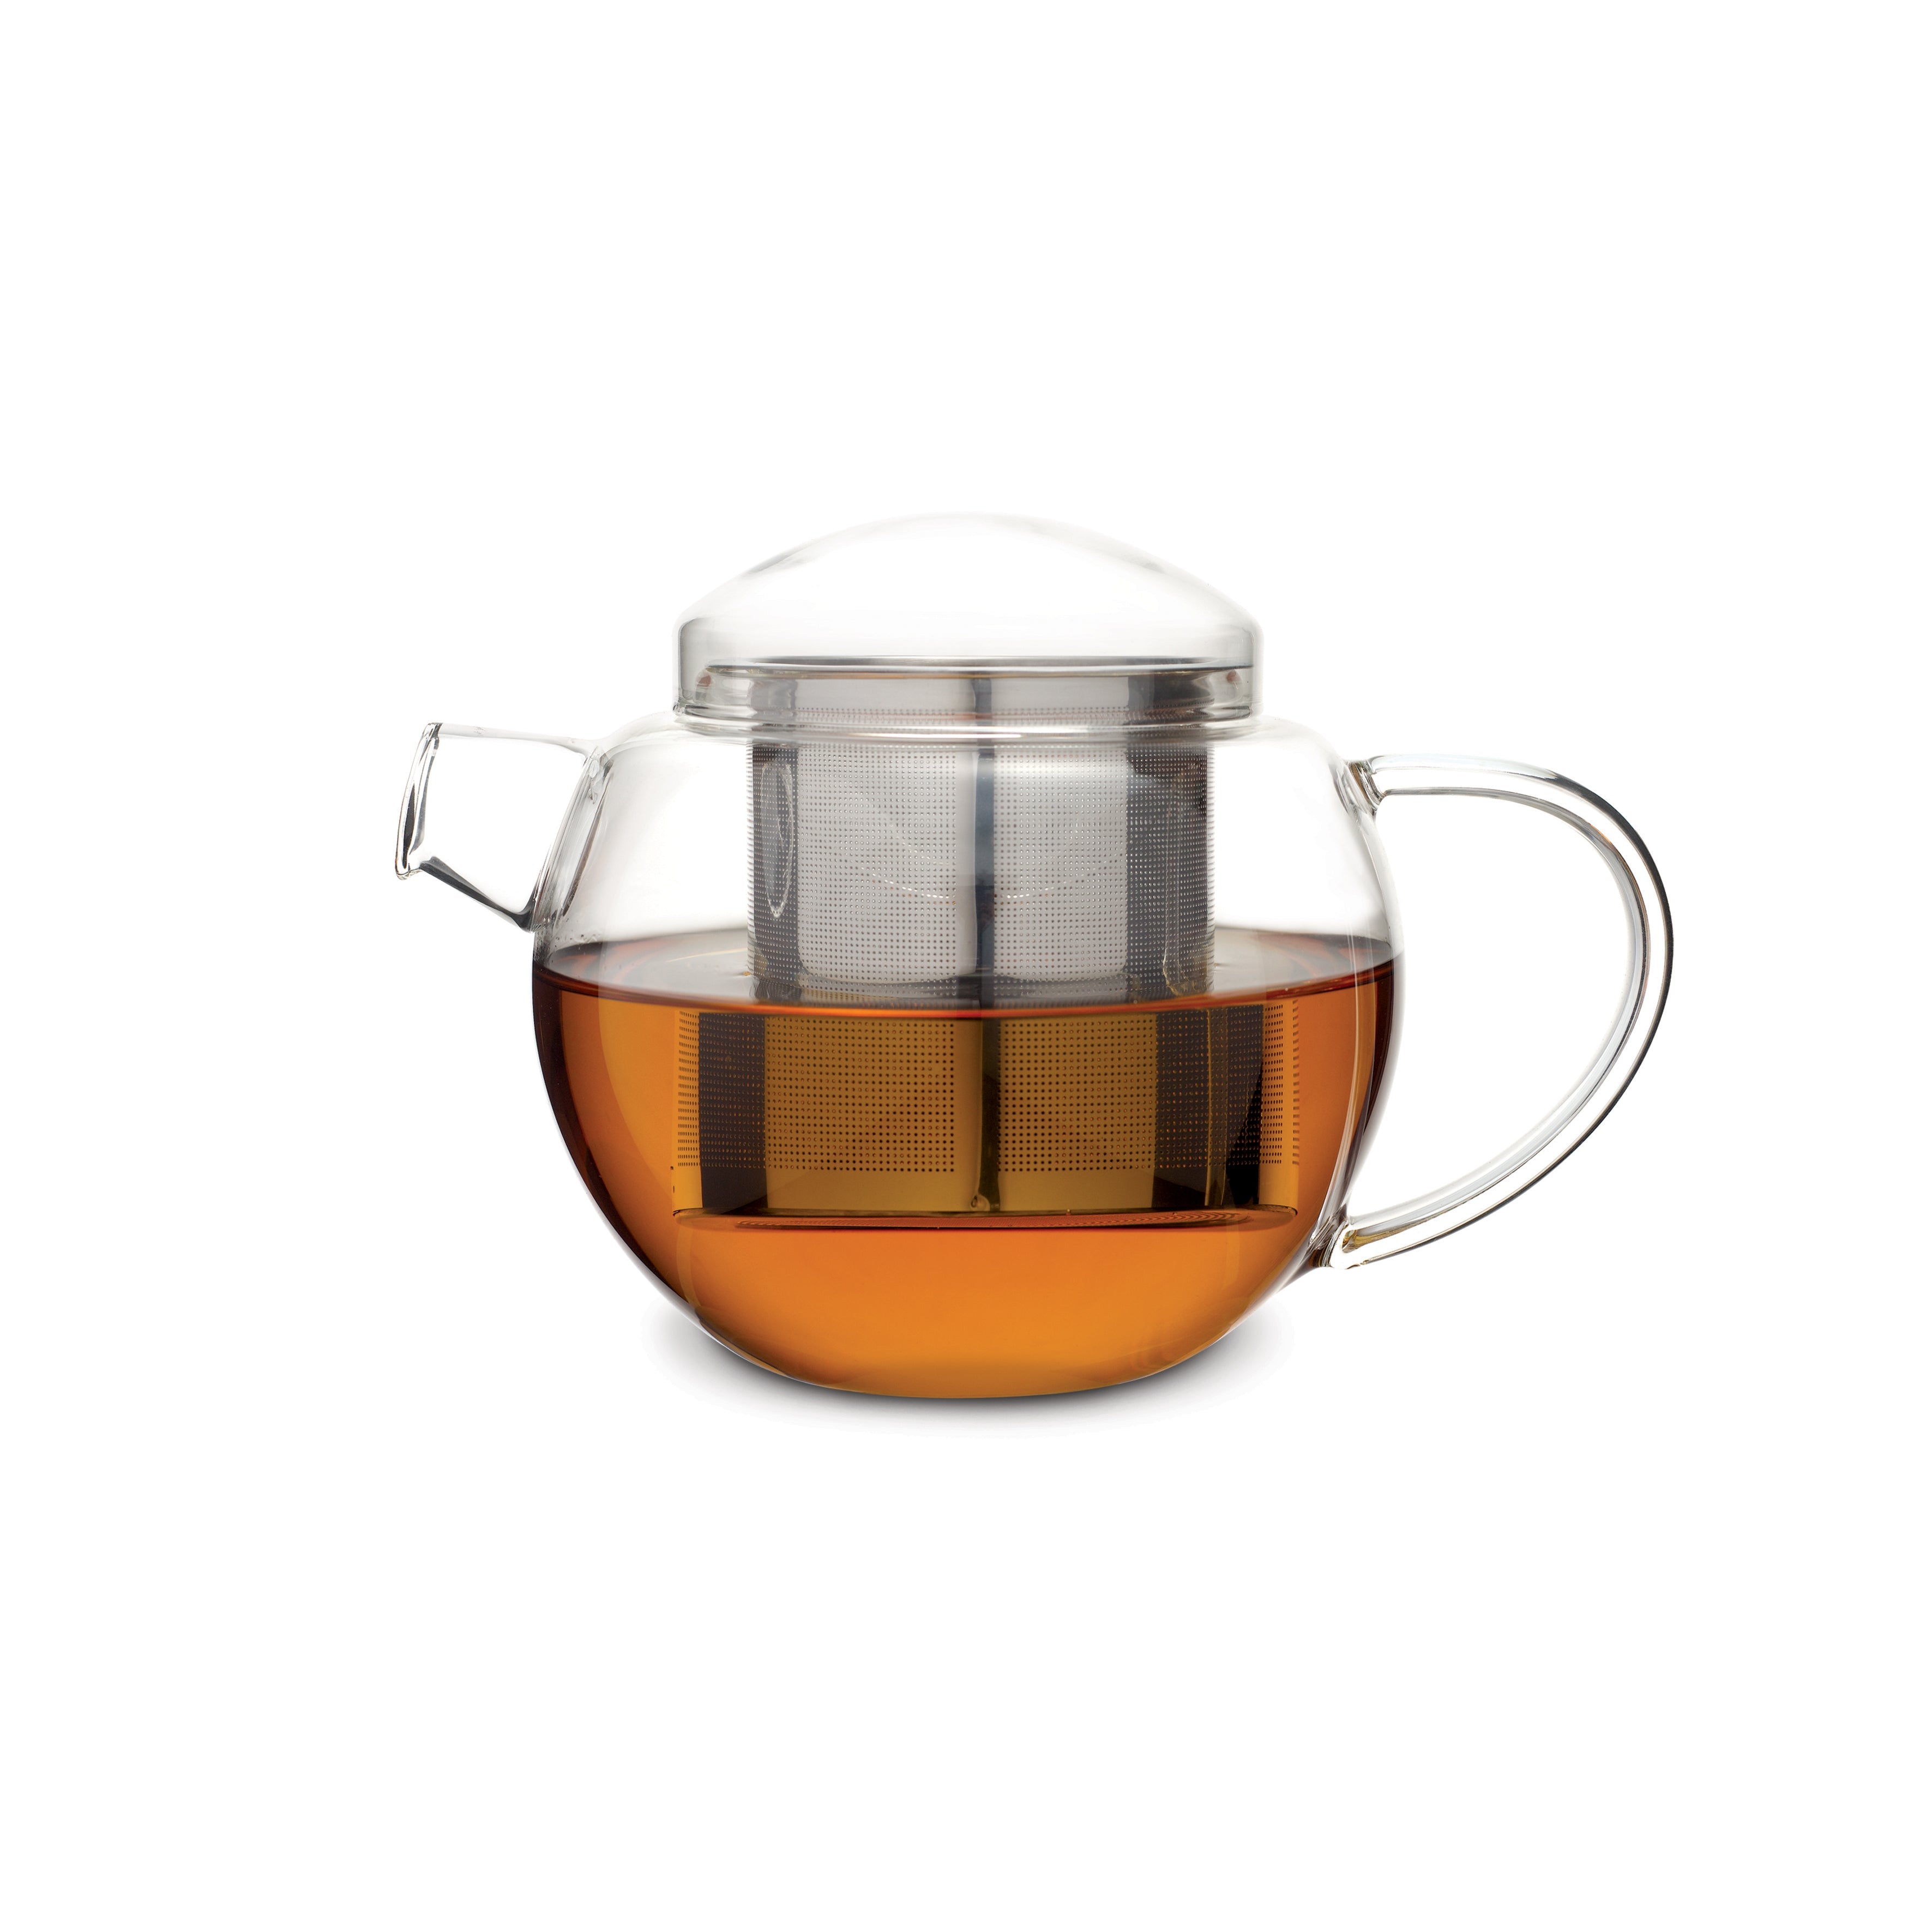 קנקן תה מזכוכית עם בית חליטה 900 מ"ל מקולקציית לוברמיקס פרו תה - Loveramics Pro Tea - CREAMA+